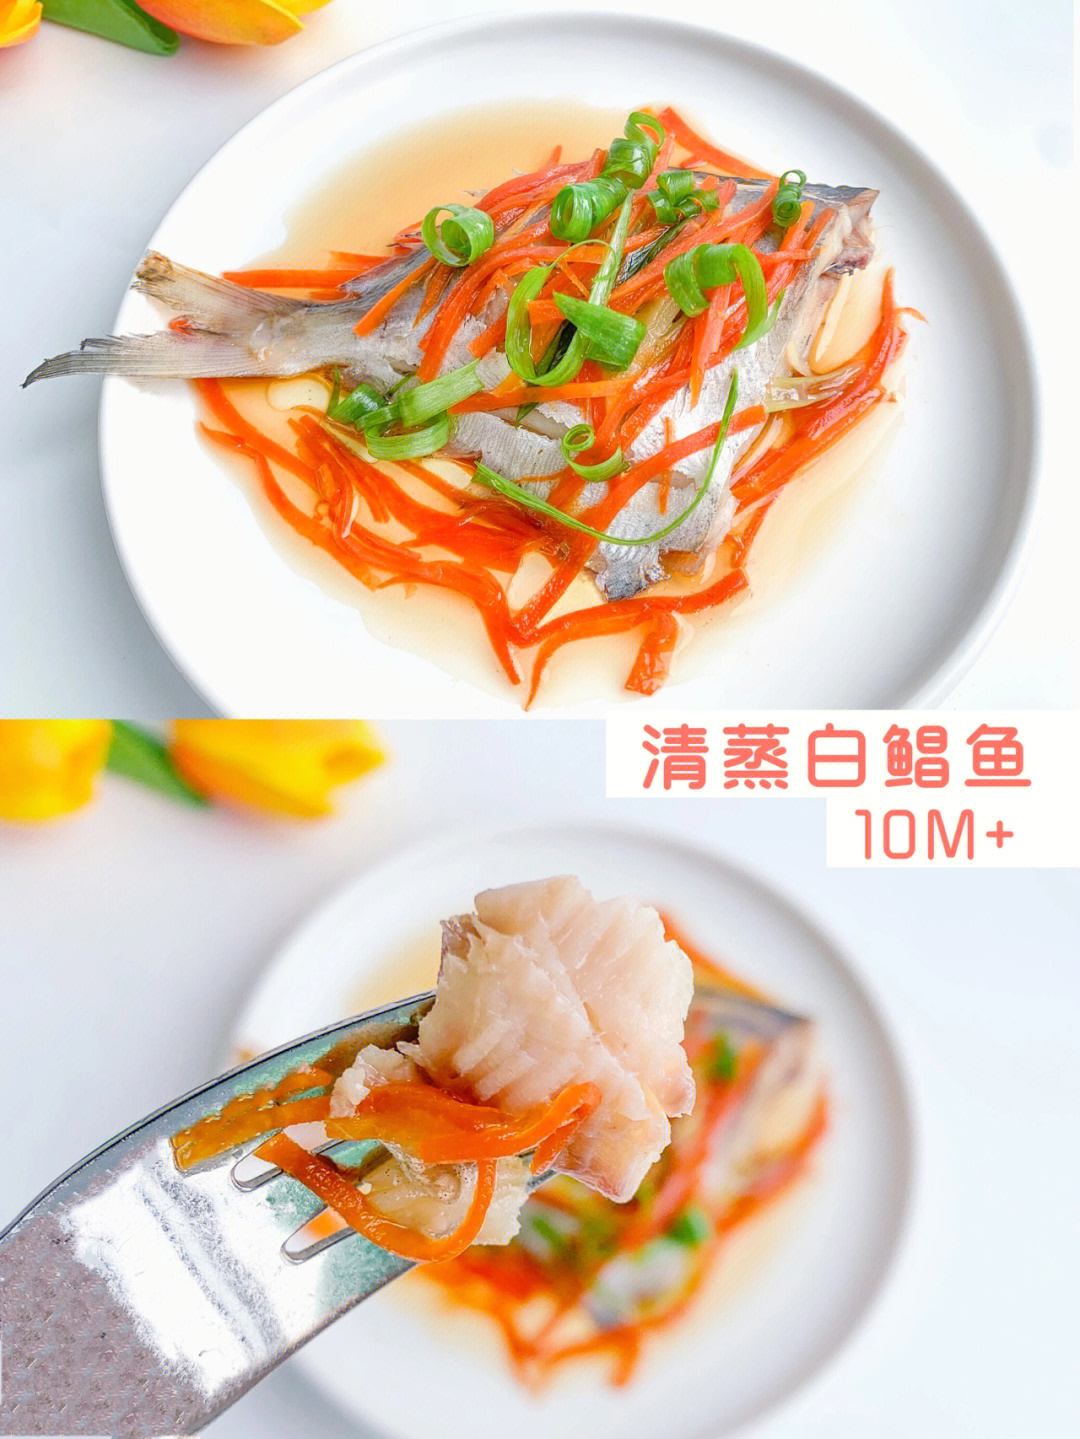 10m宝宝辅食清蒸白鲳鱼肉质细腻高蛋白